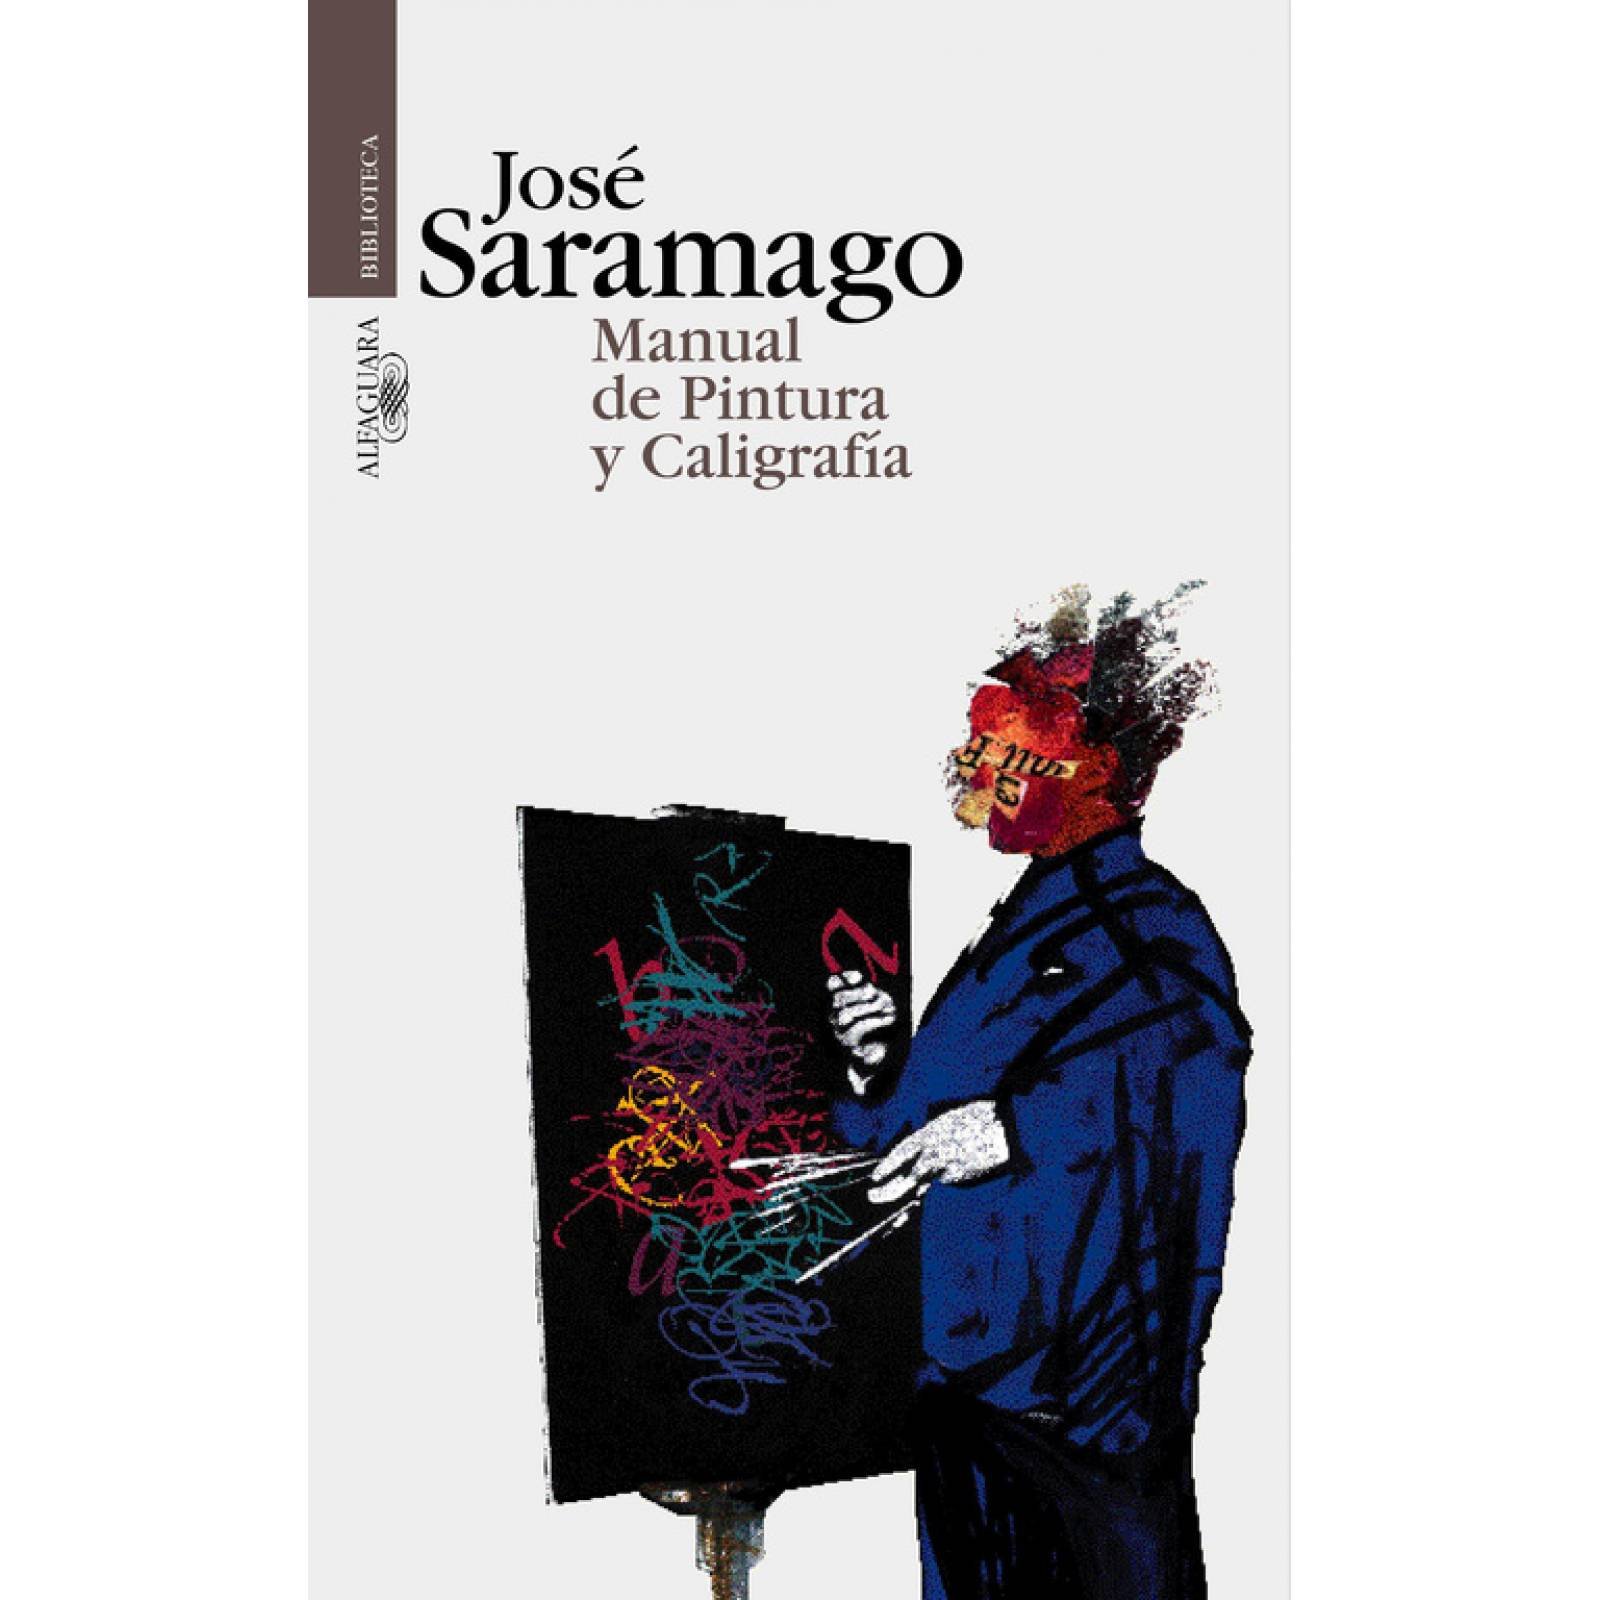 Manual de pintura y caligrafíaAutorSaramago, José